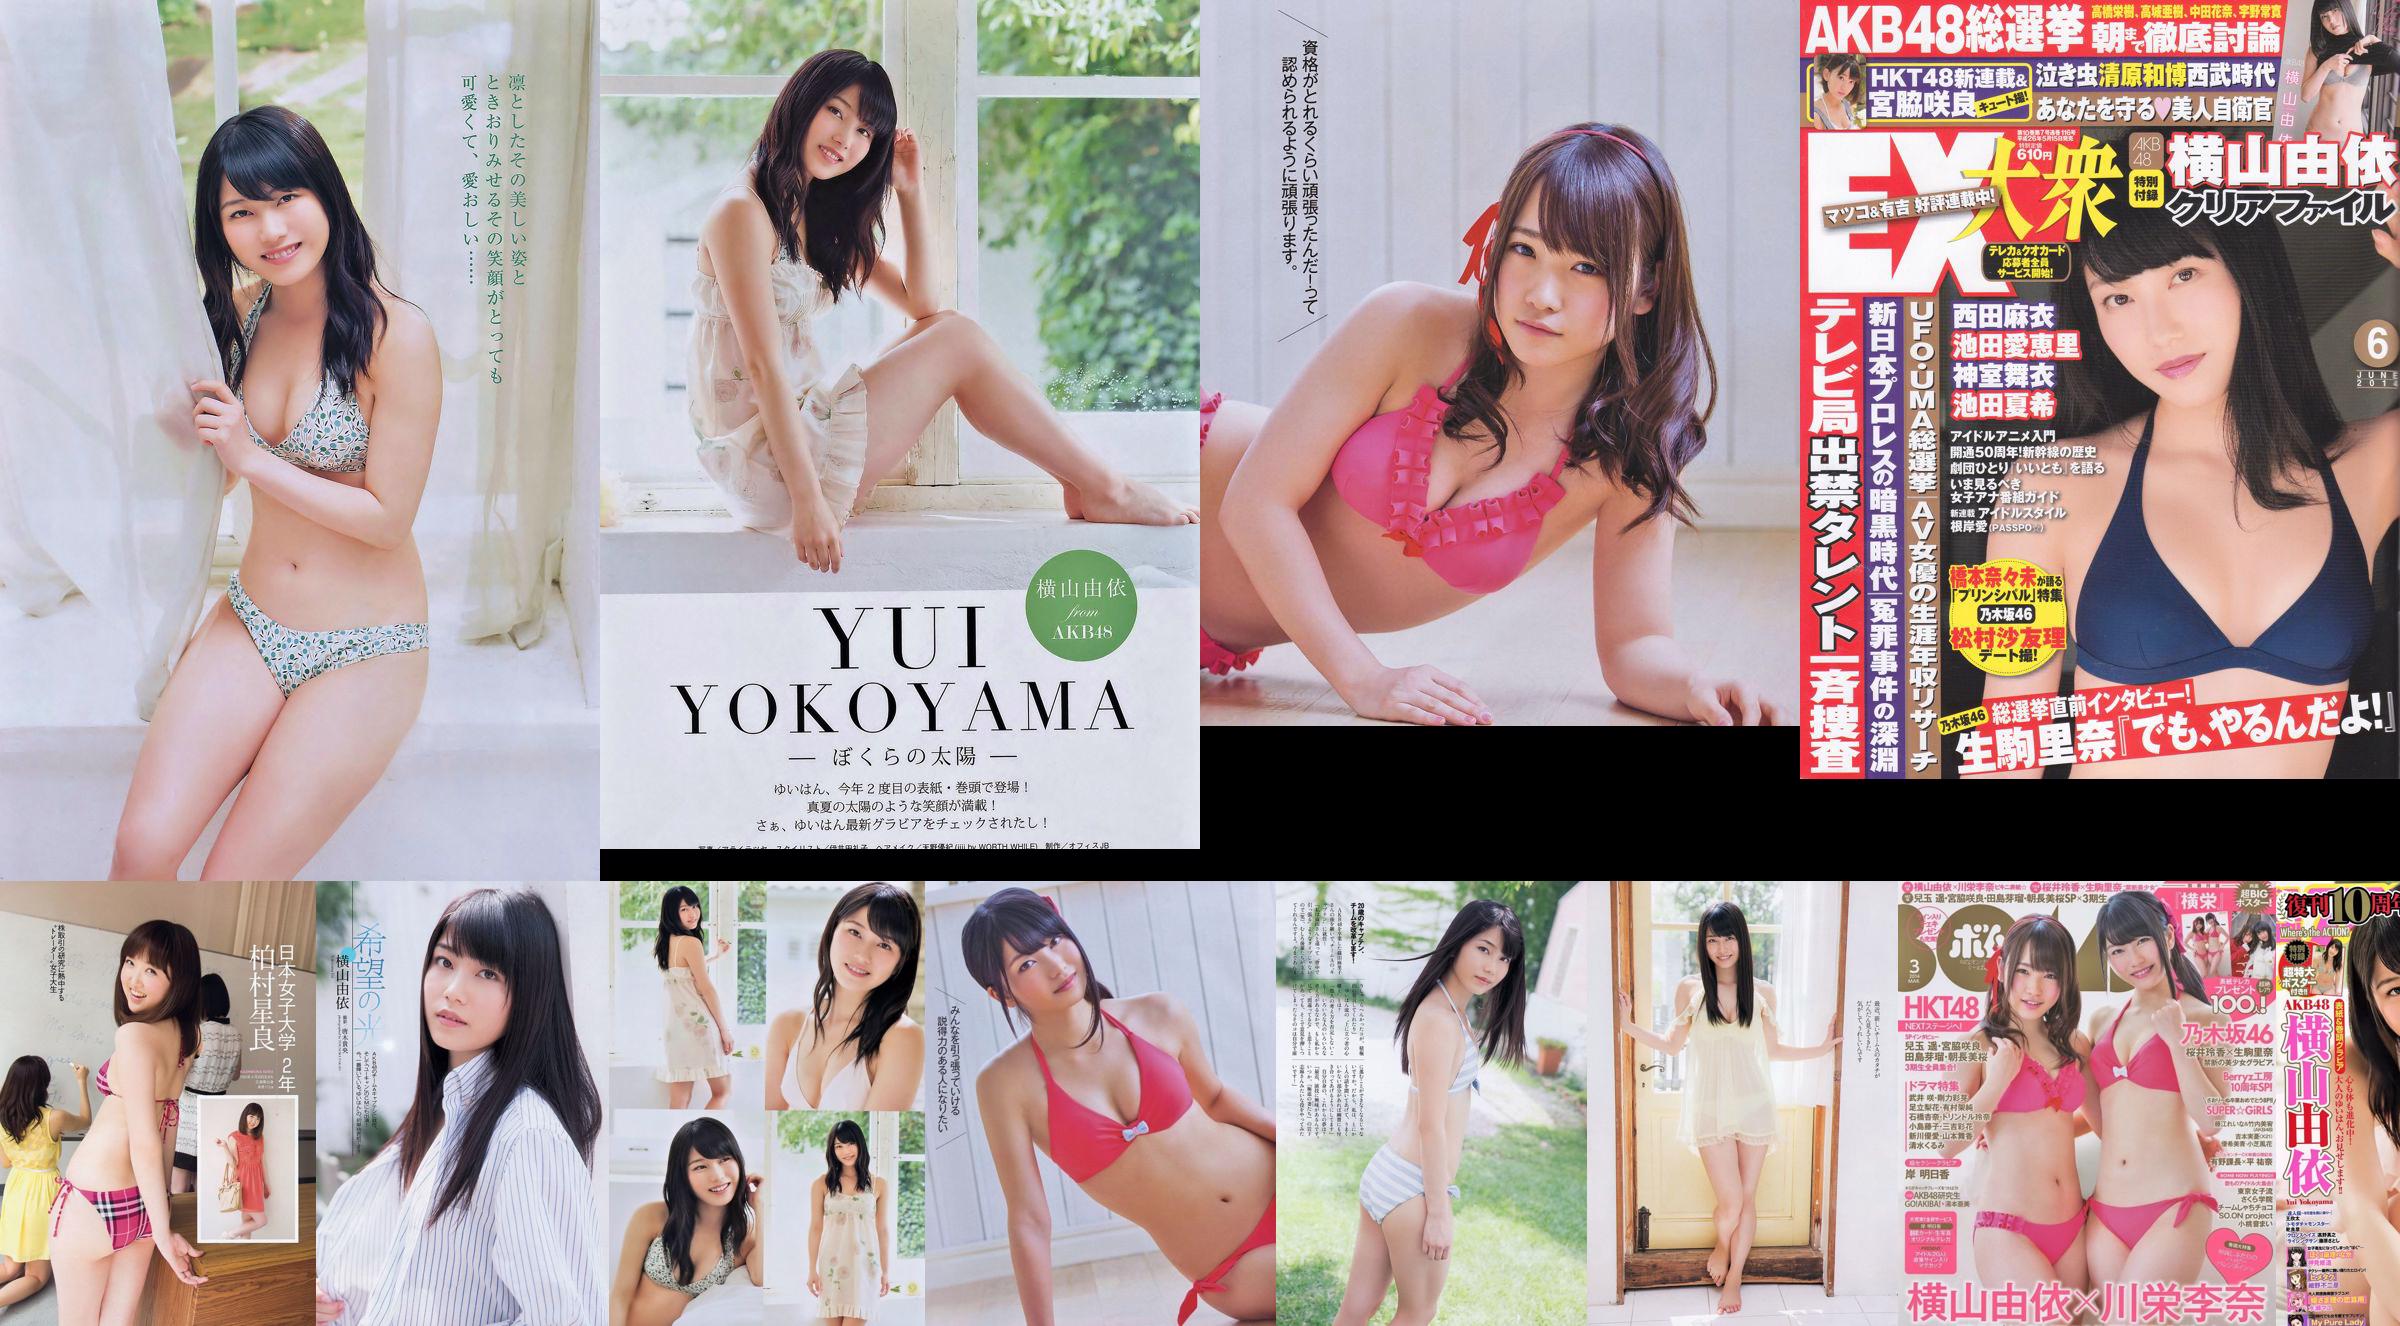 [炸彈雜誌] 2014 No.03 Yui Yokoyama Rina Kawaei 照片 No.848c98 第10頁